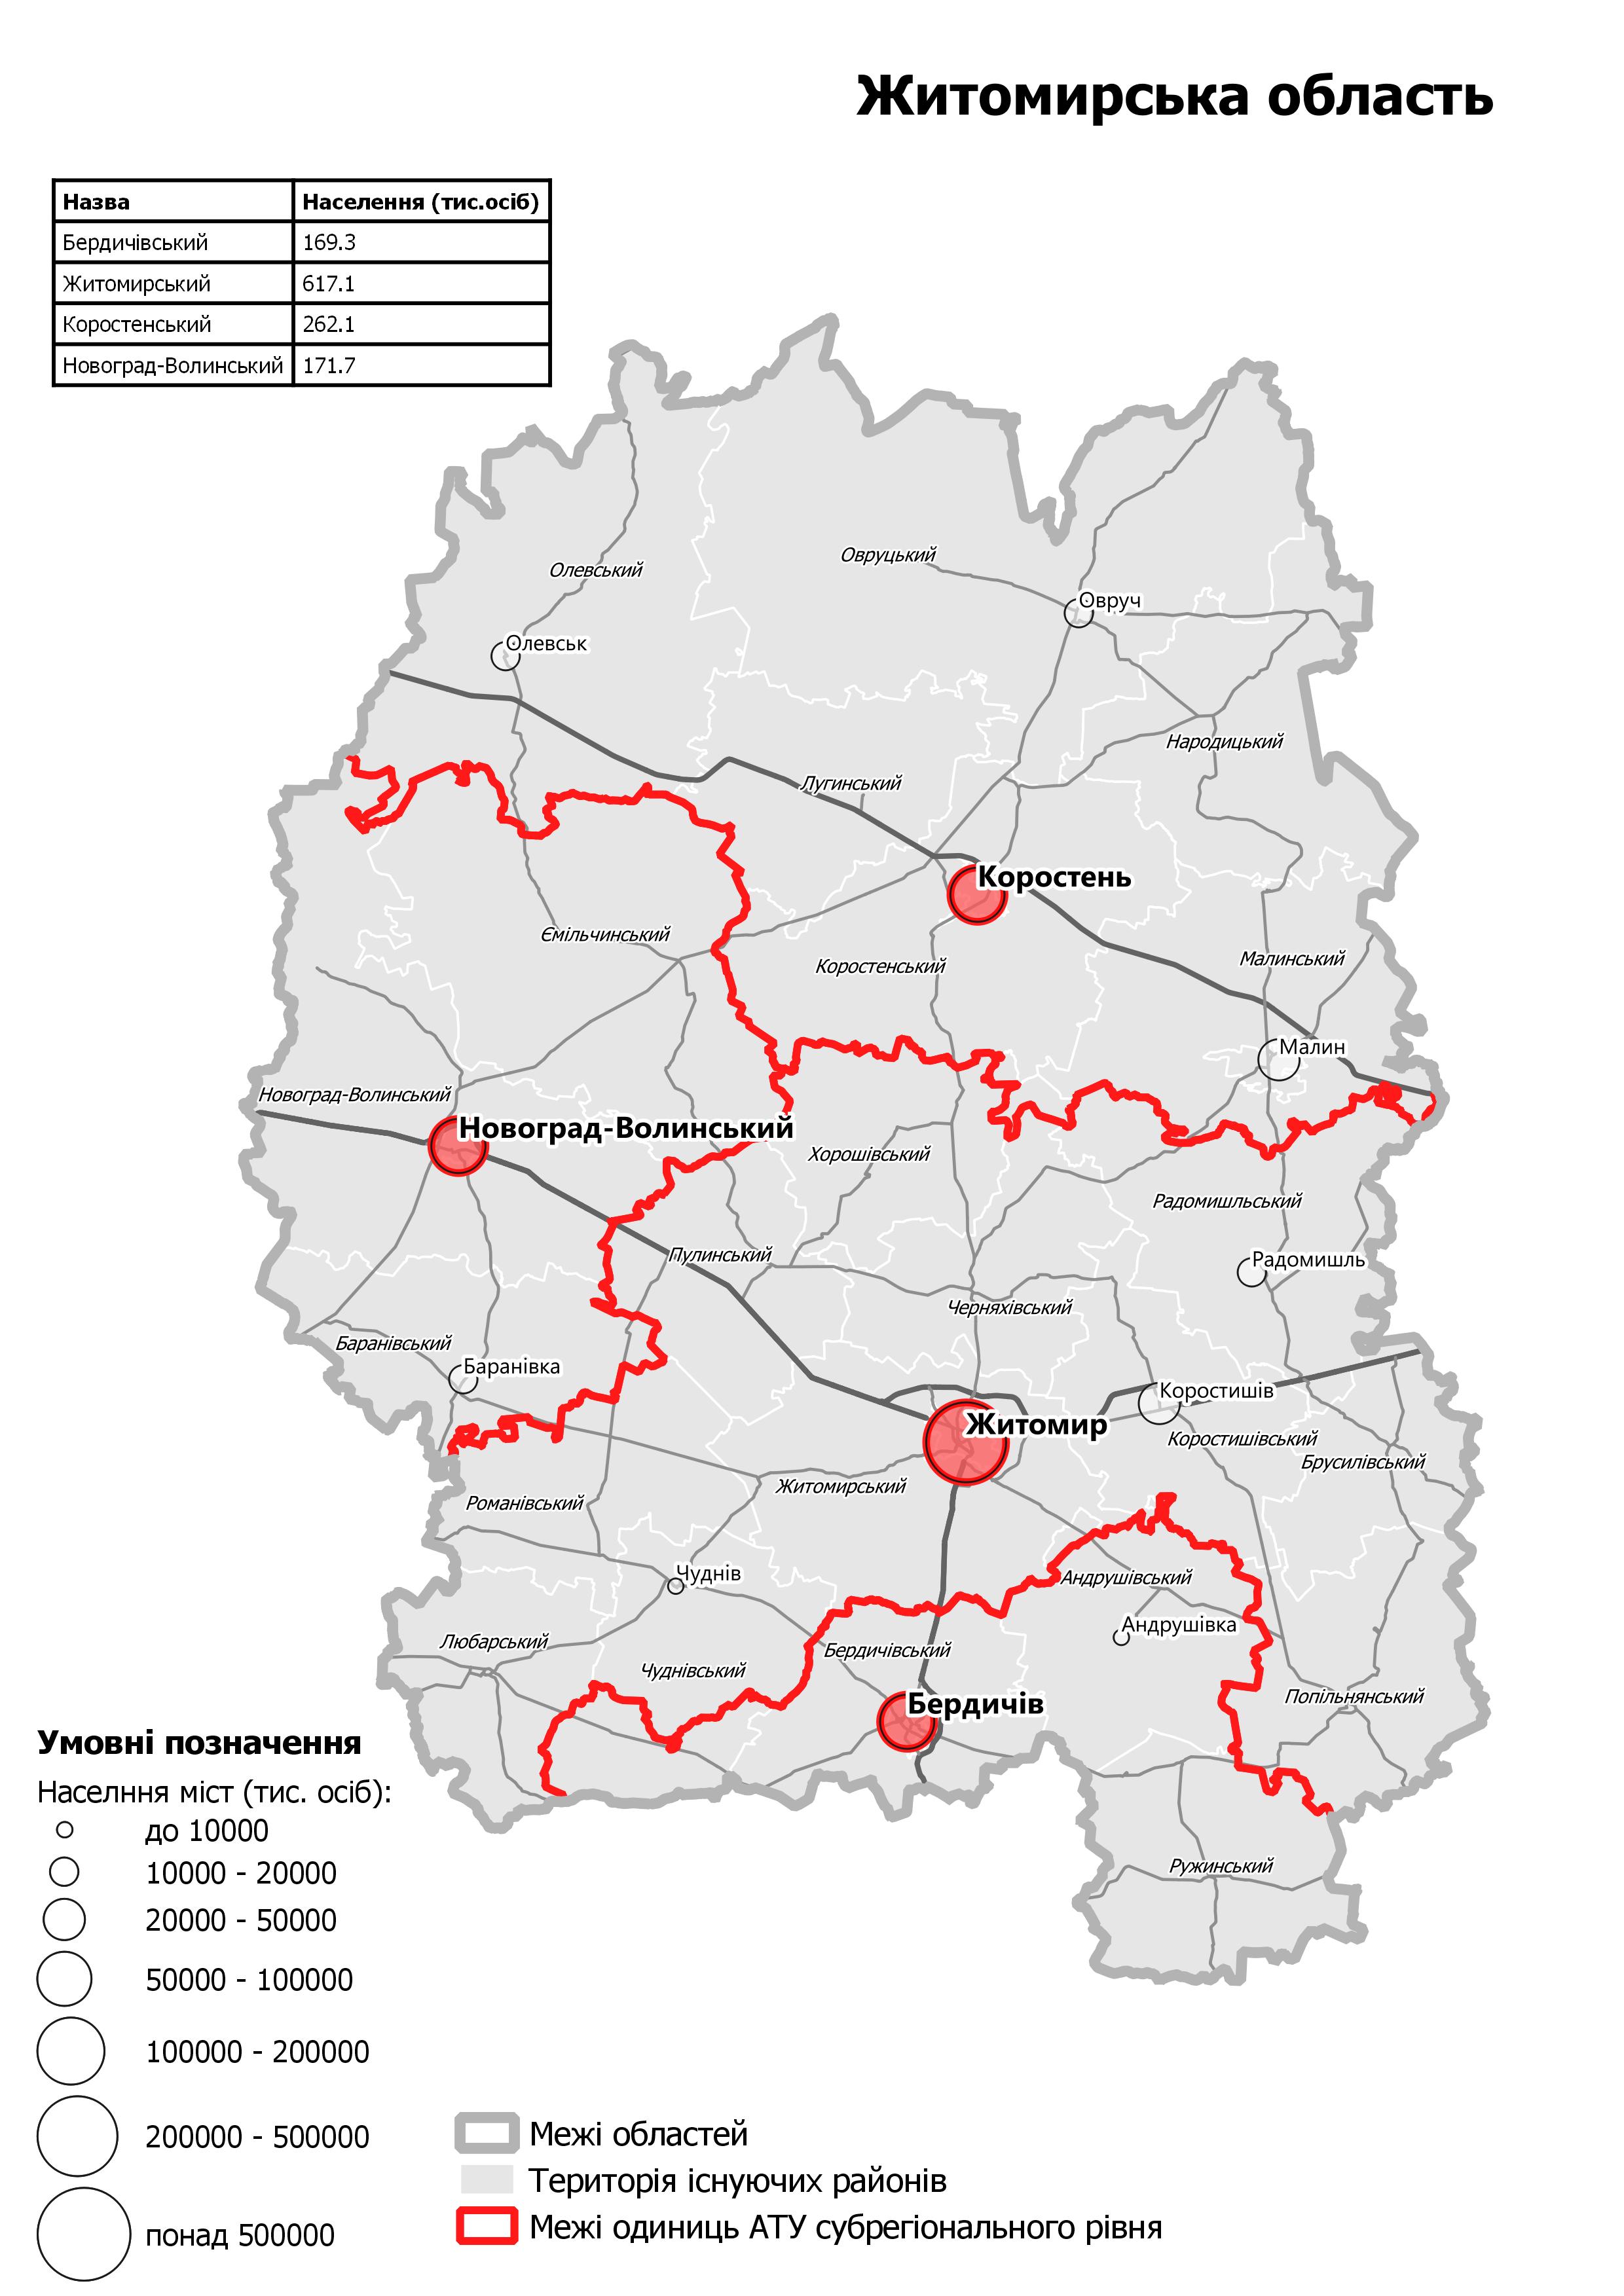 Проект территориального устройства Житомирской области